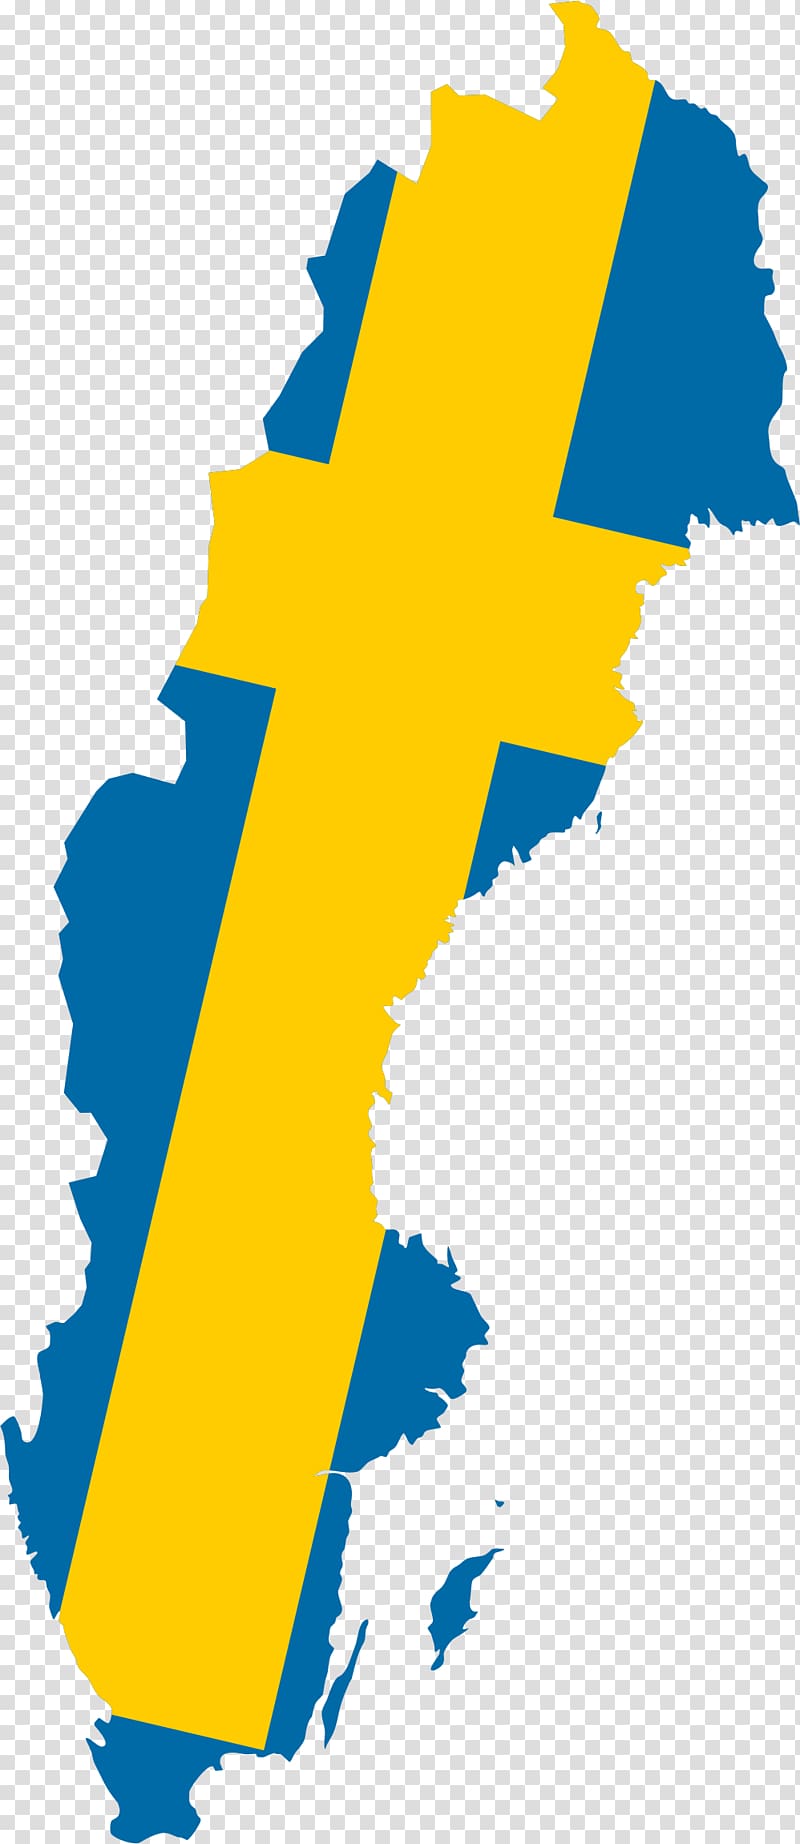 Flag of Sweden National flag Map, map transparent background PNG clipart